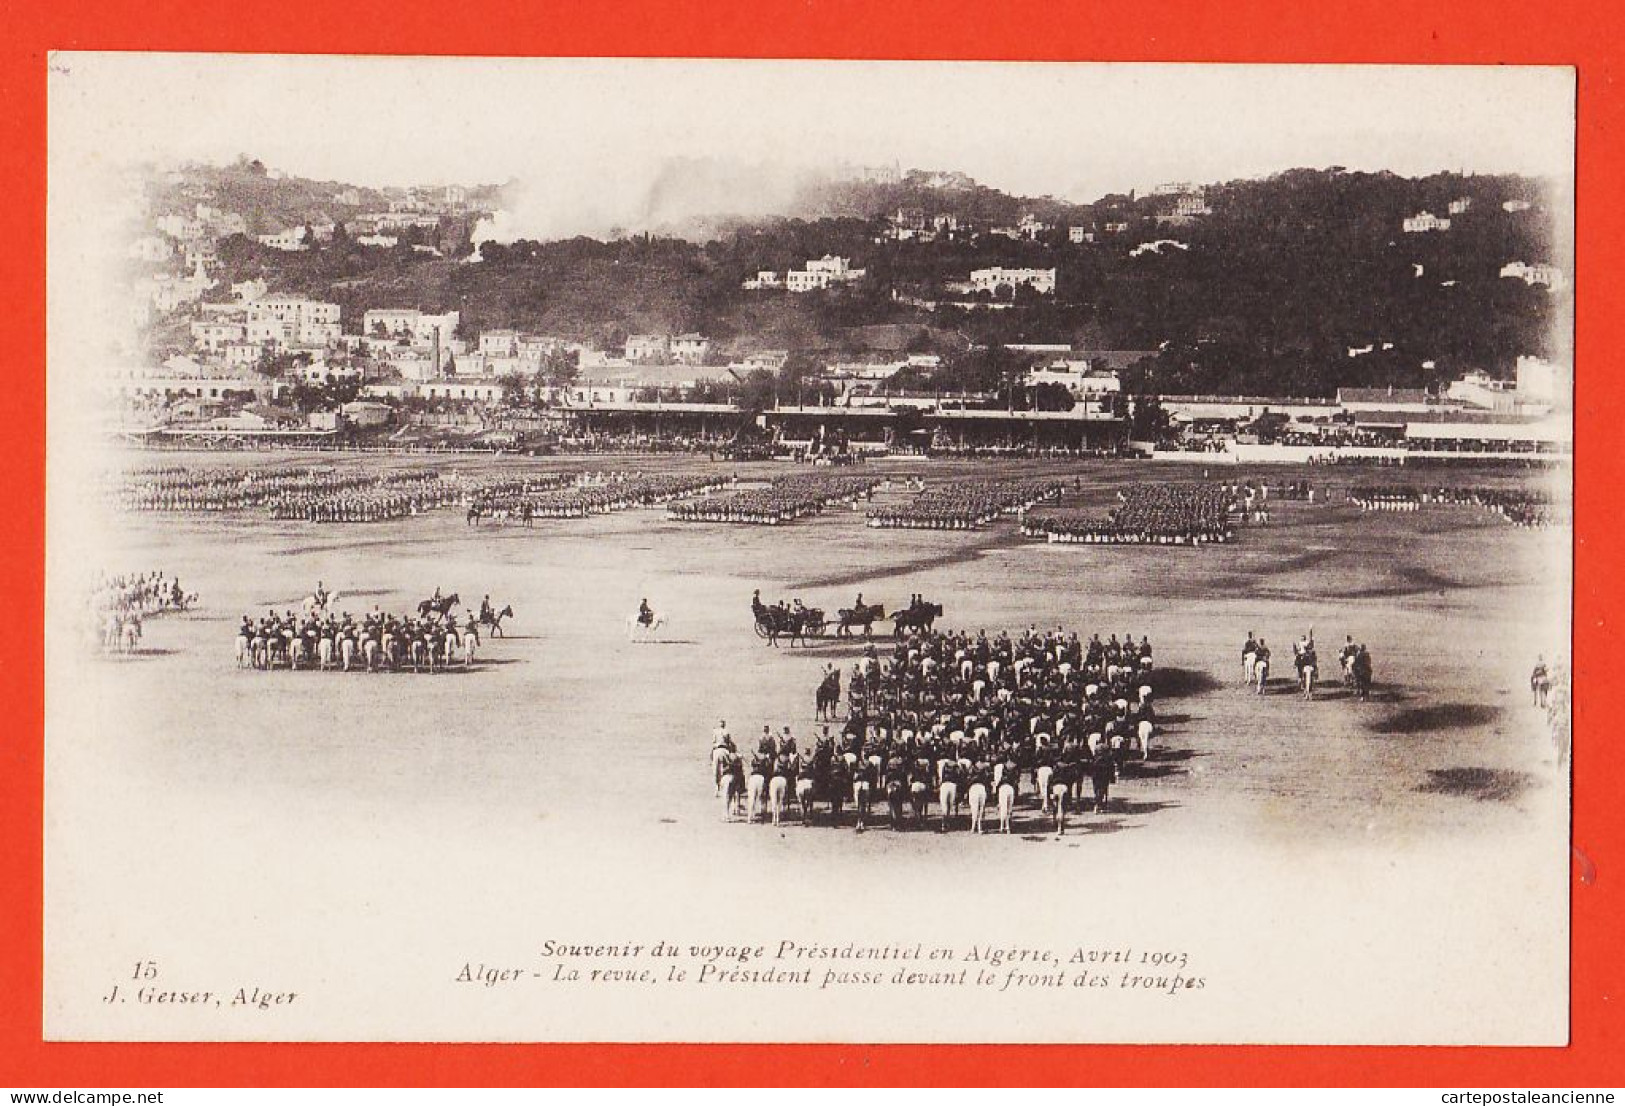 01742 / ALGER Algérie Souvenir Voyage Présidentiel LOUBET Avril 1903 Revue Président Passe Front Troupes GEISER - Algeri